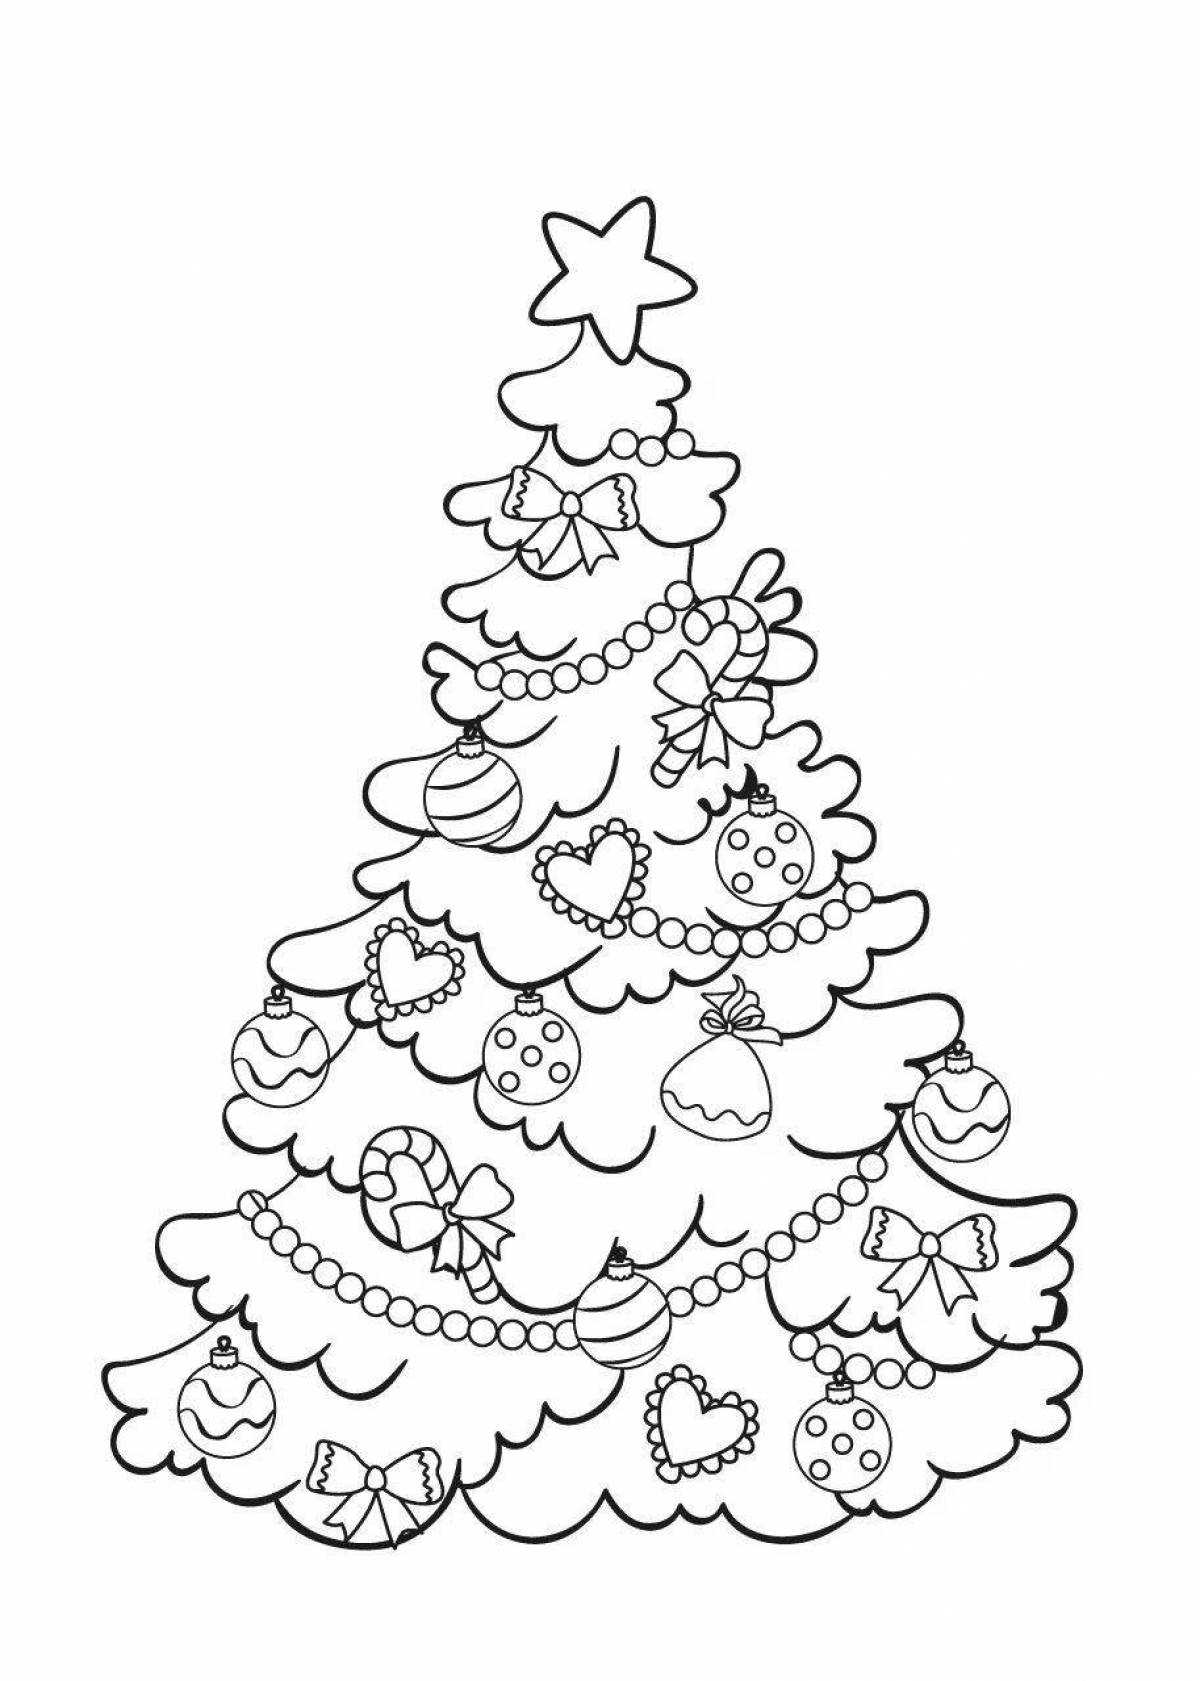 Экзотическая раскраска рождественская елка для детей